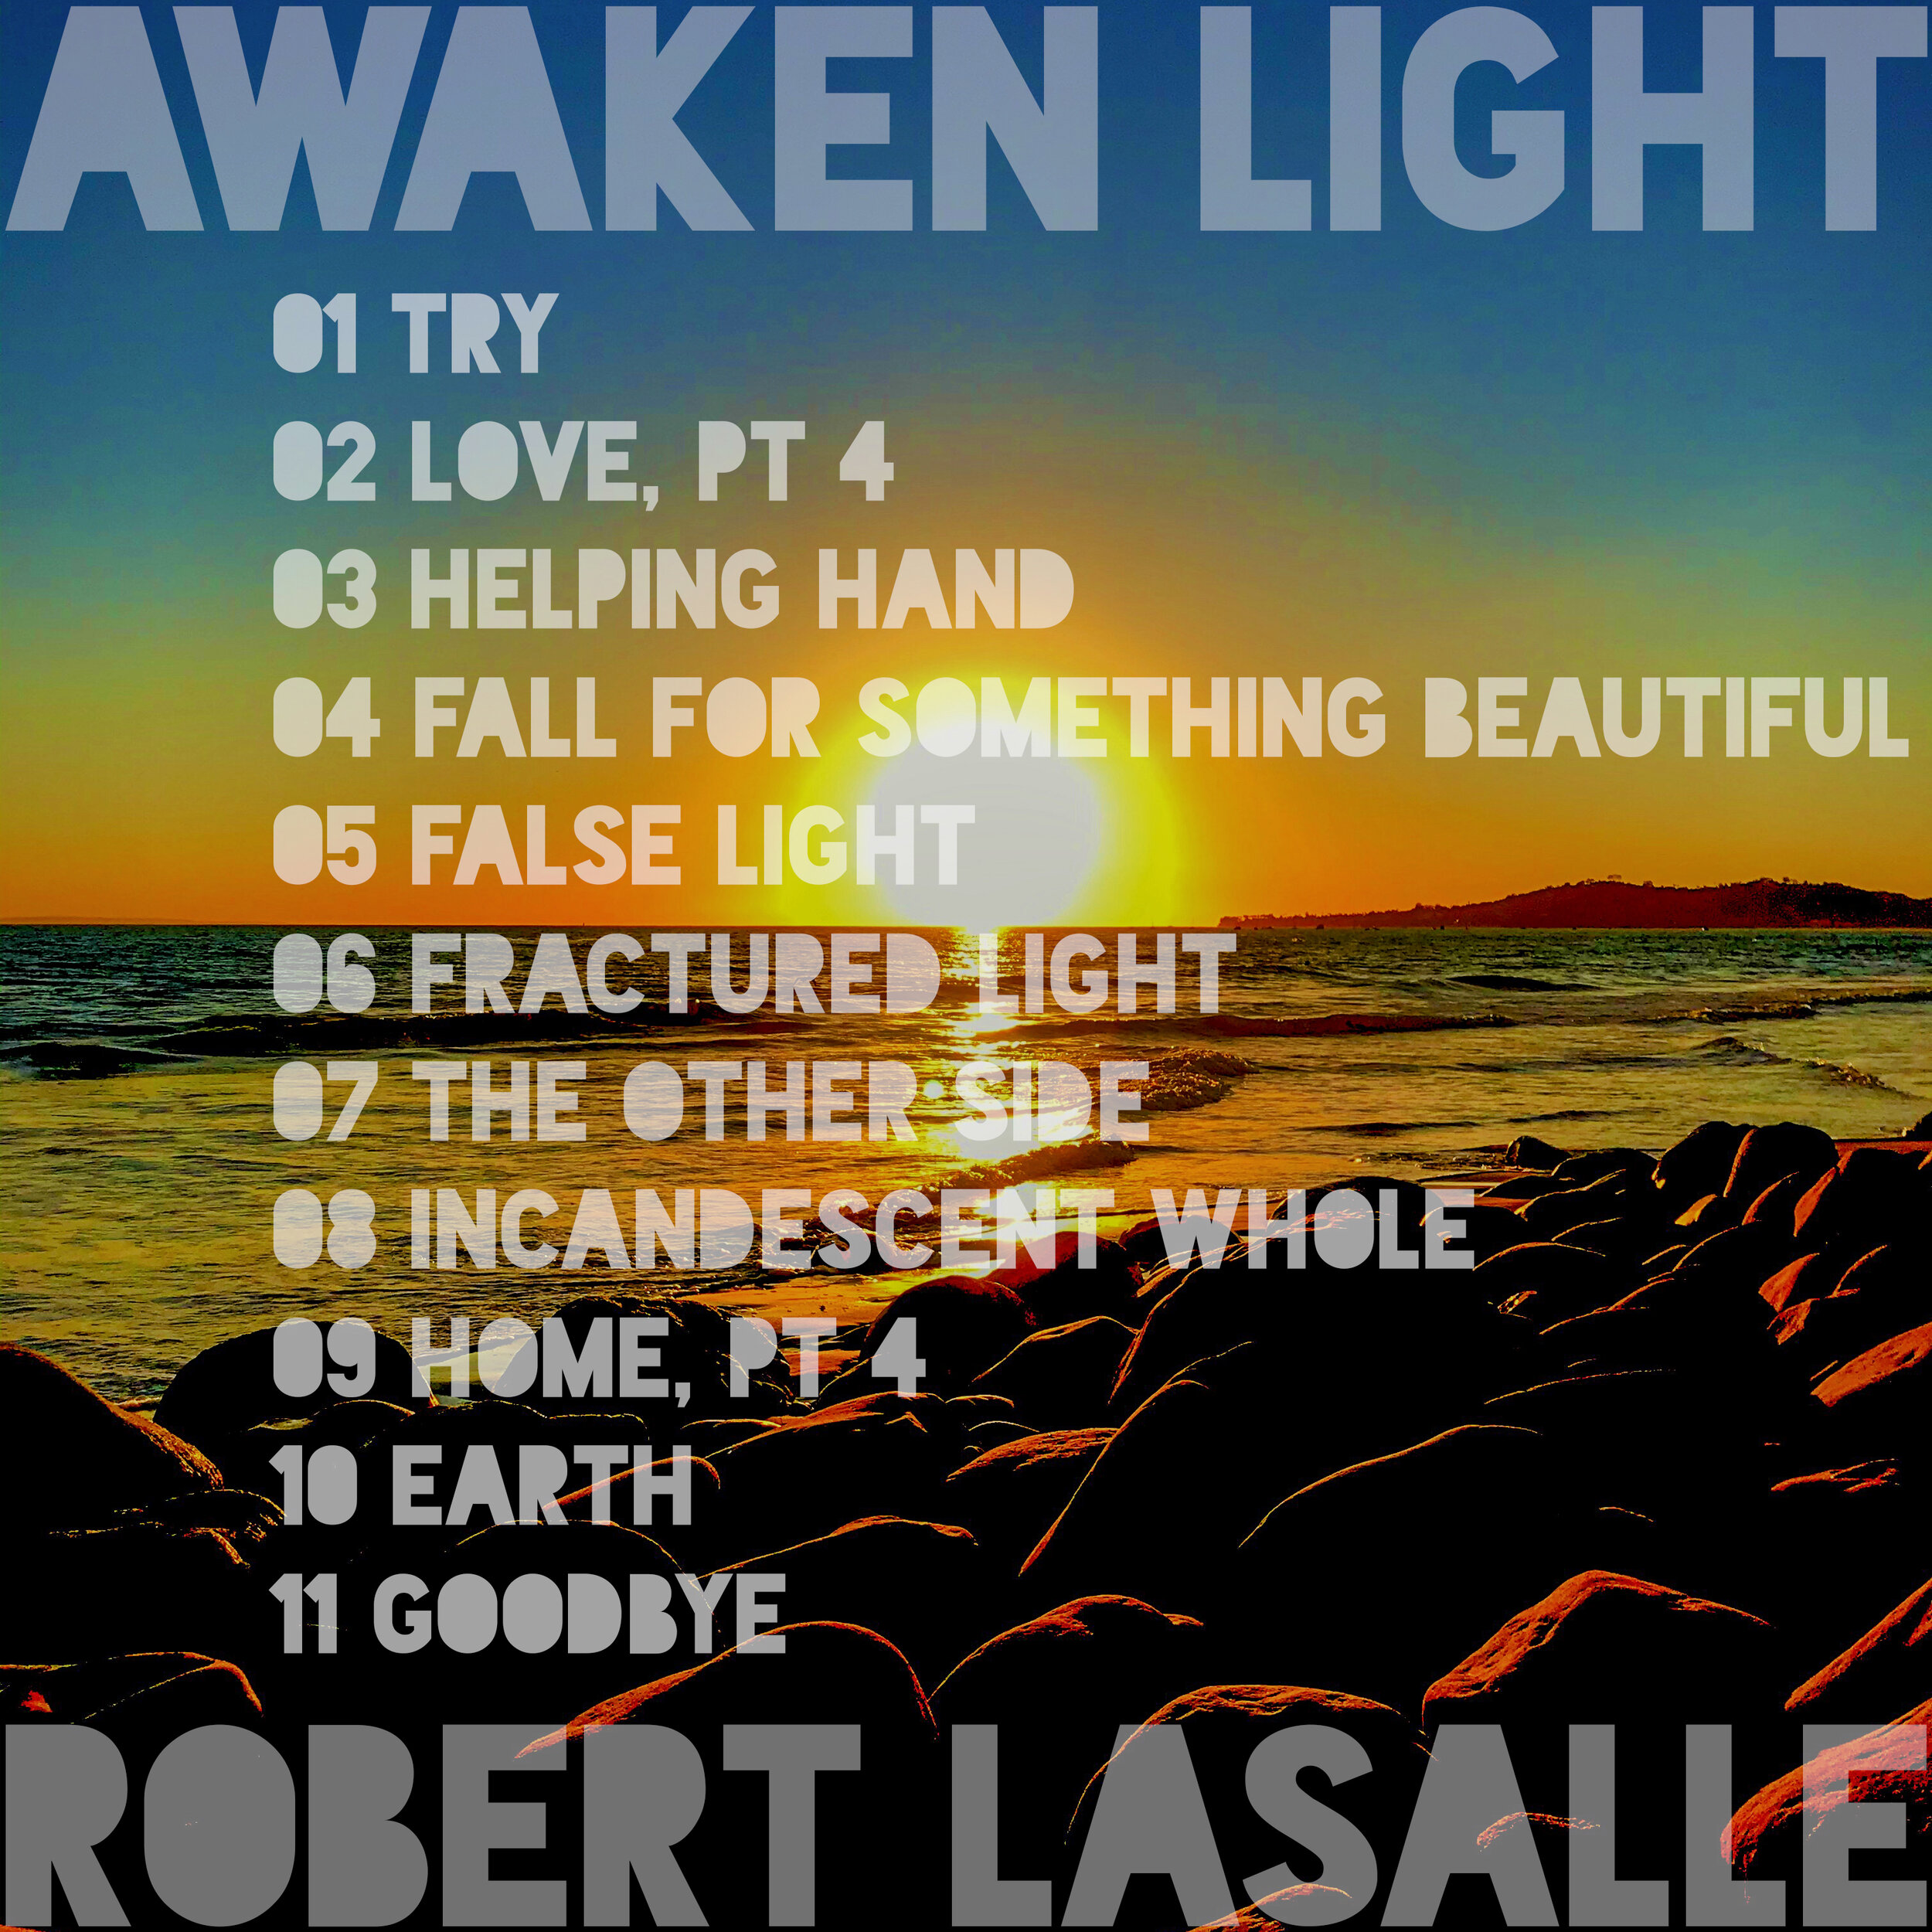 333 AWAKEN LIGHT tracklist.jpeg